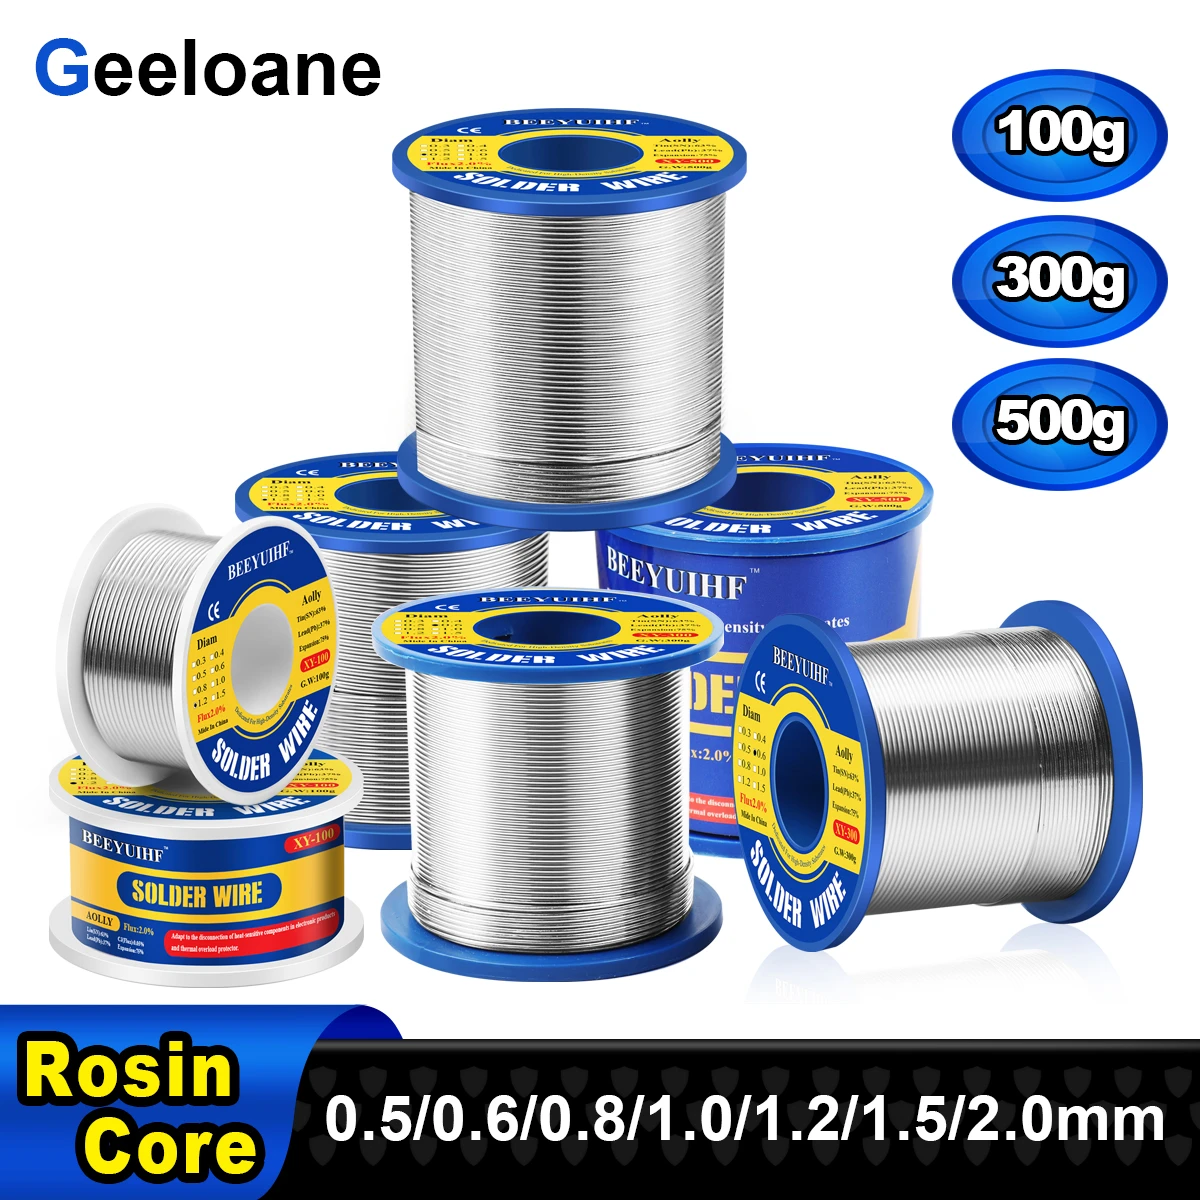 100g 300g 500g Solder Wire Tin Sn 63/Pb 37 Rosin Core Welding Soldering Wire Reel No-clean Flux 2% 0.5/0.6/0.8/1.0/1.2/1.5/2.0mm soldering flux paste Welding & Soldering Supplies